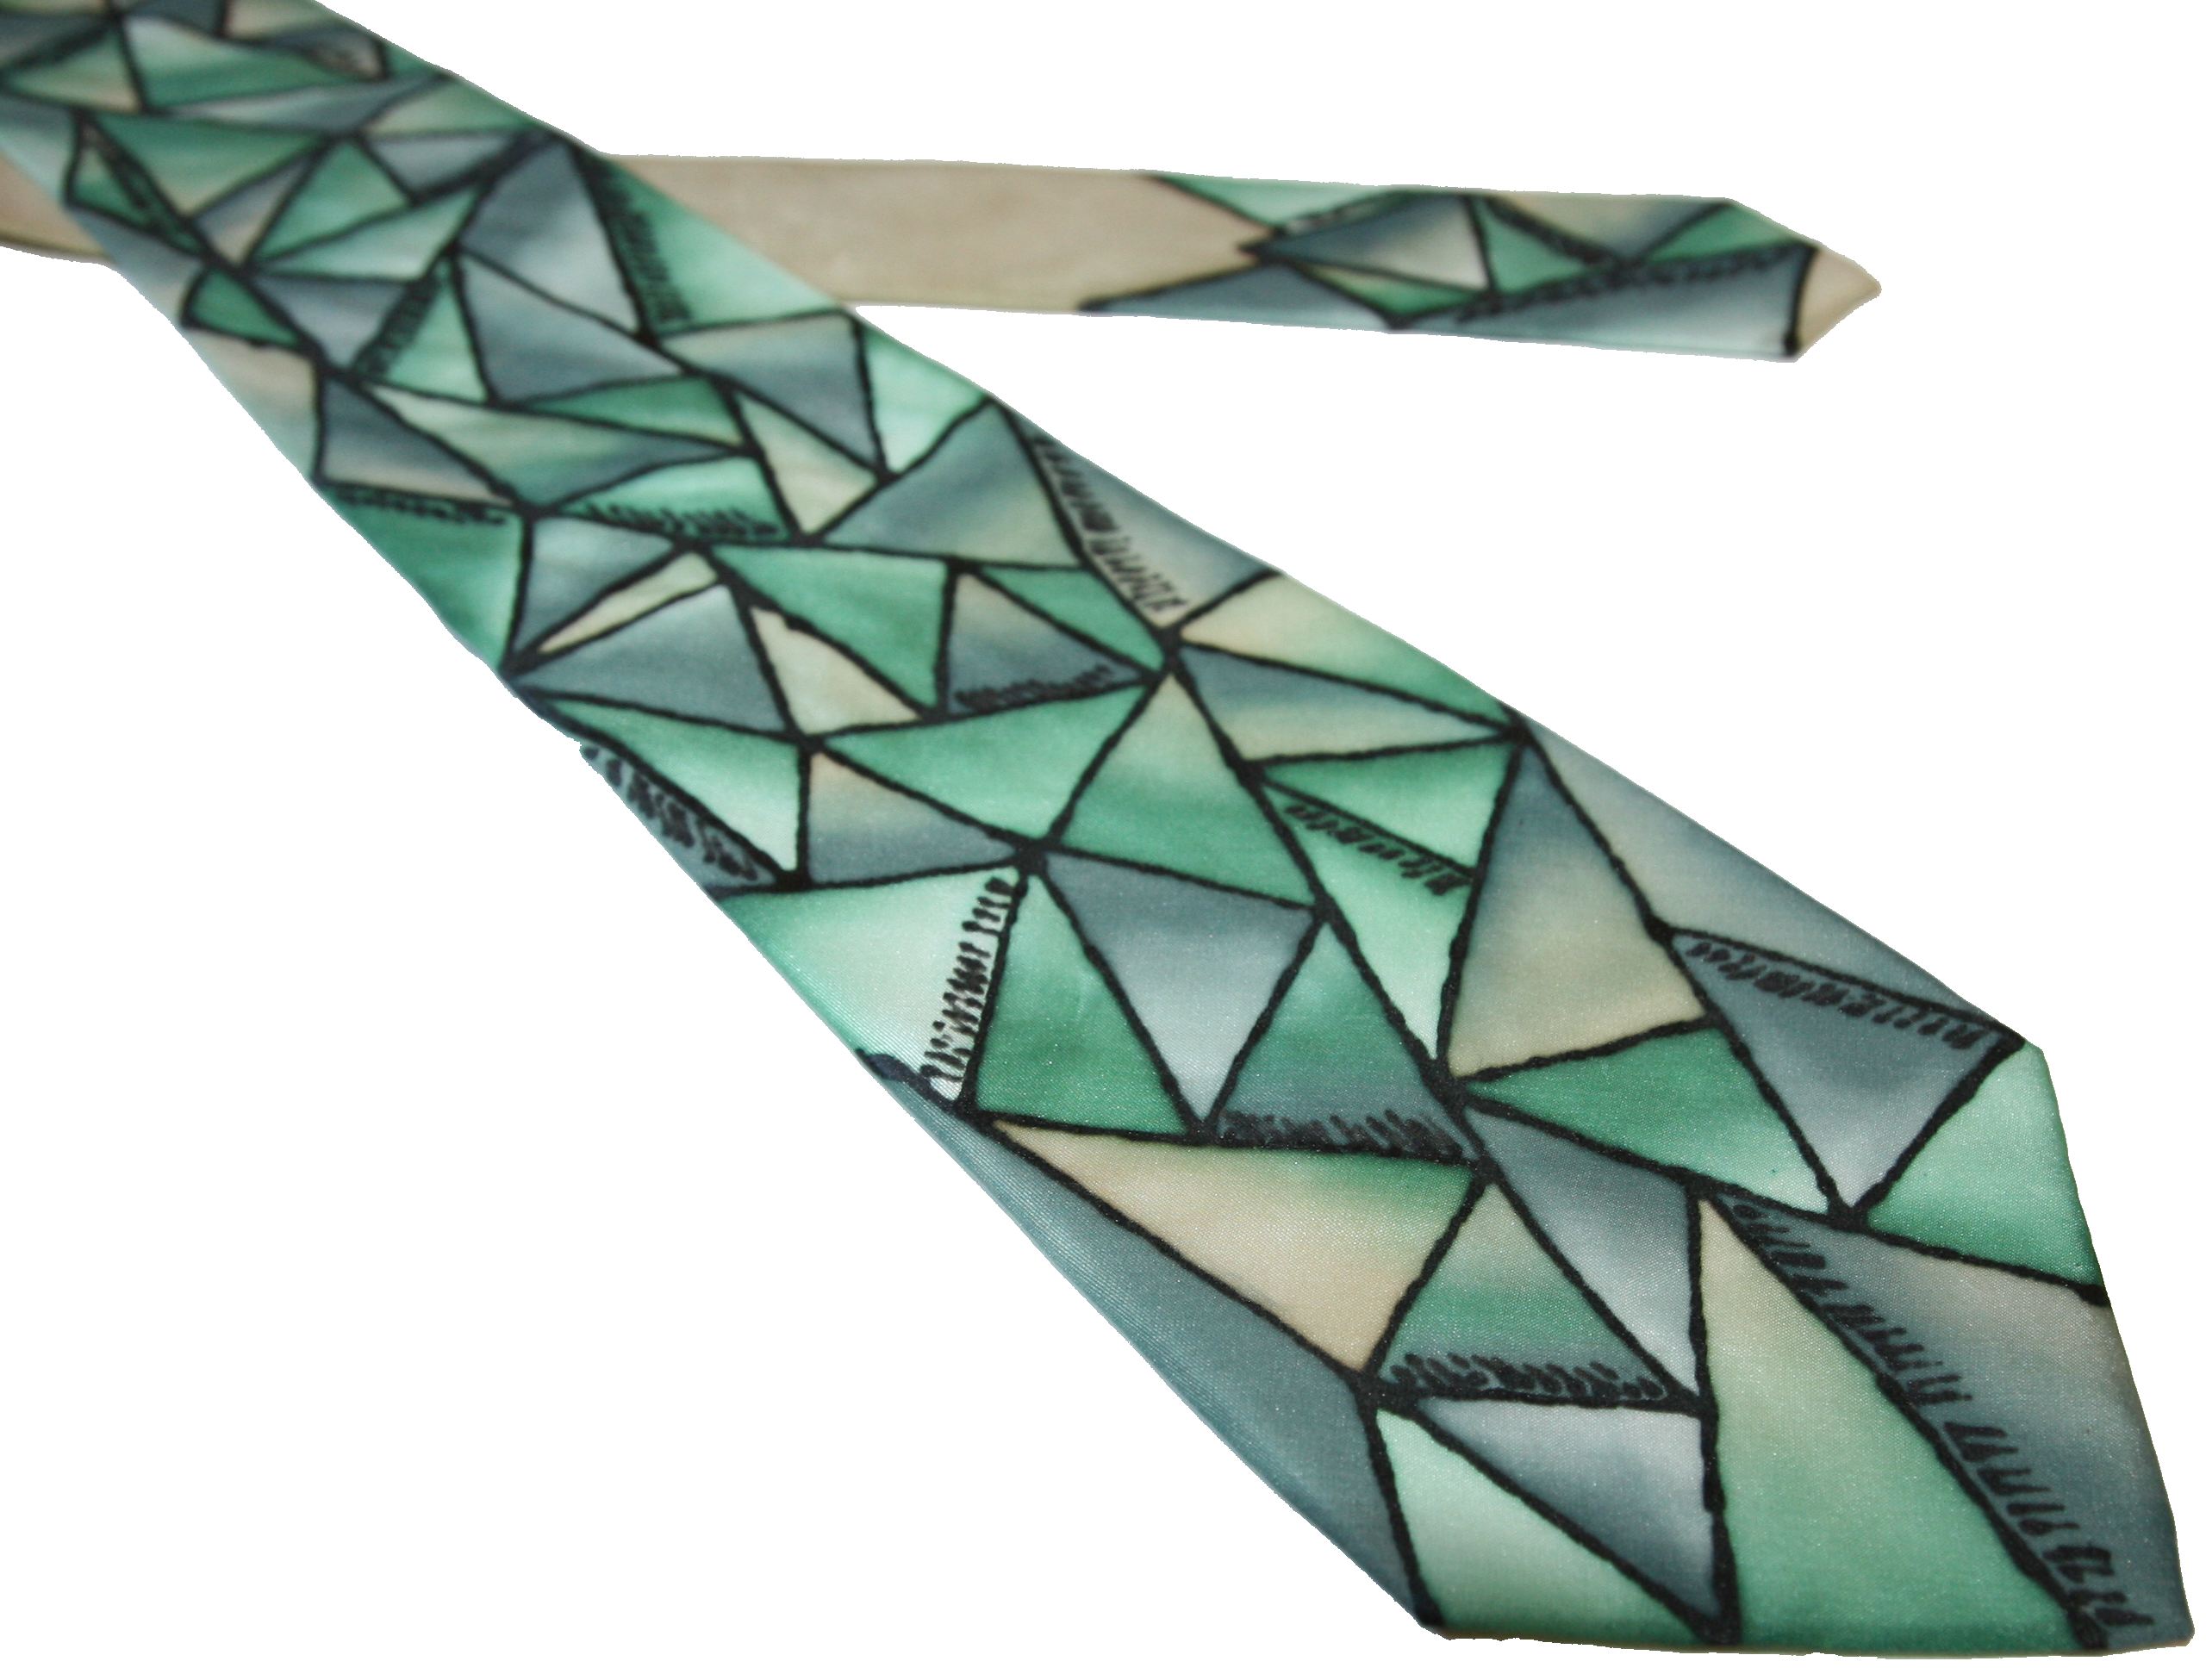 Malovaná hedvábná kravata - Trojúhelníky zelené